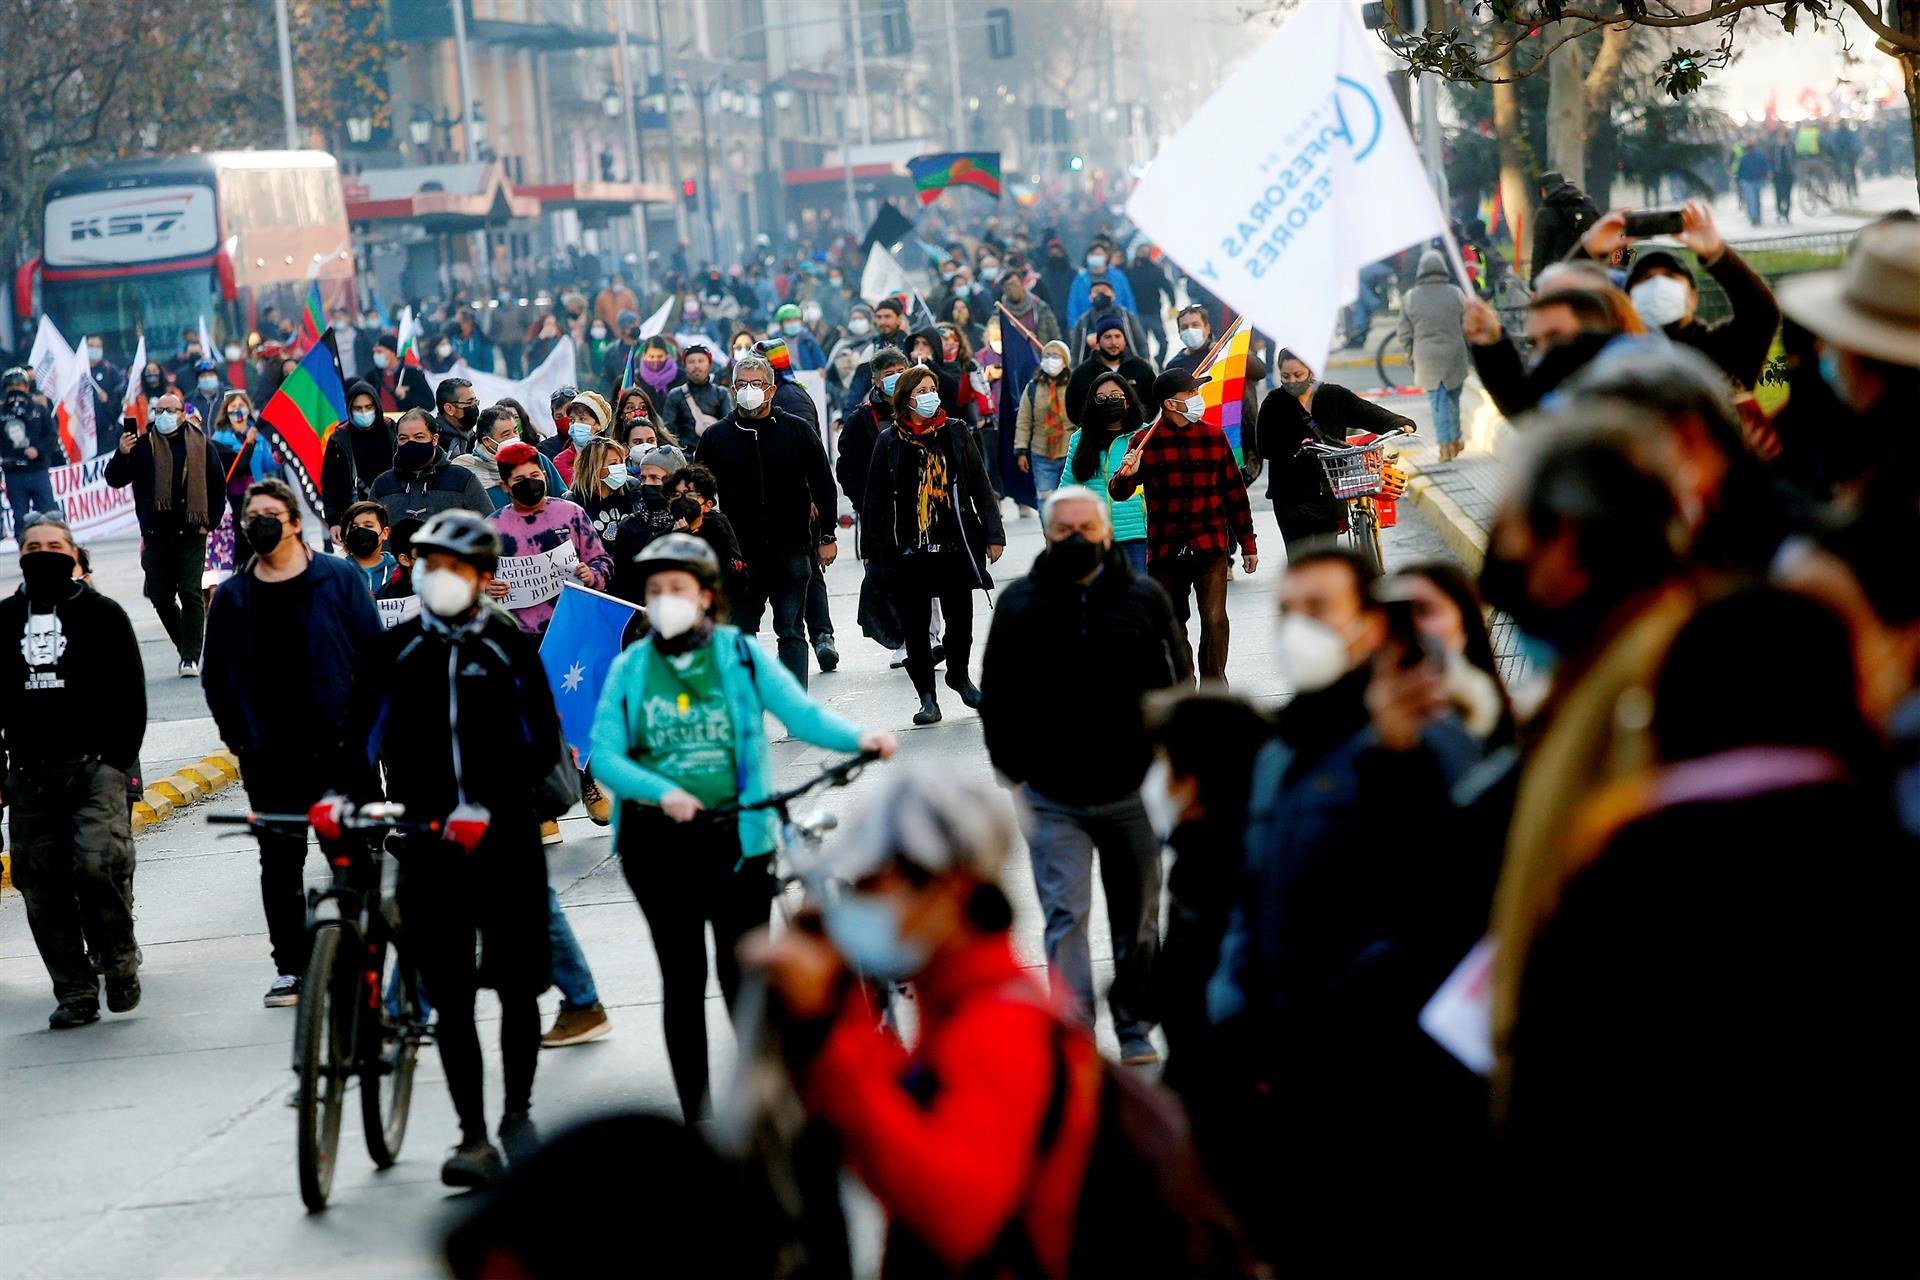 Con marchas ciudadanas en Chile inicia inauguración de convención constituyente